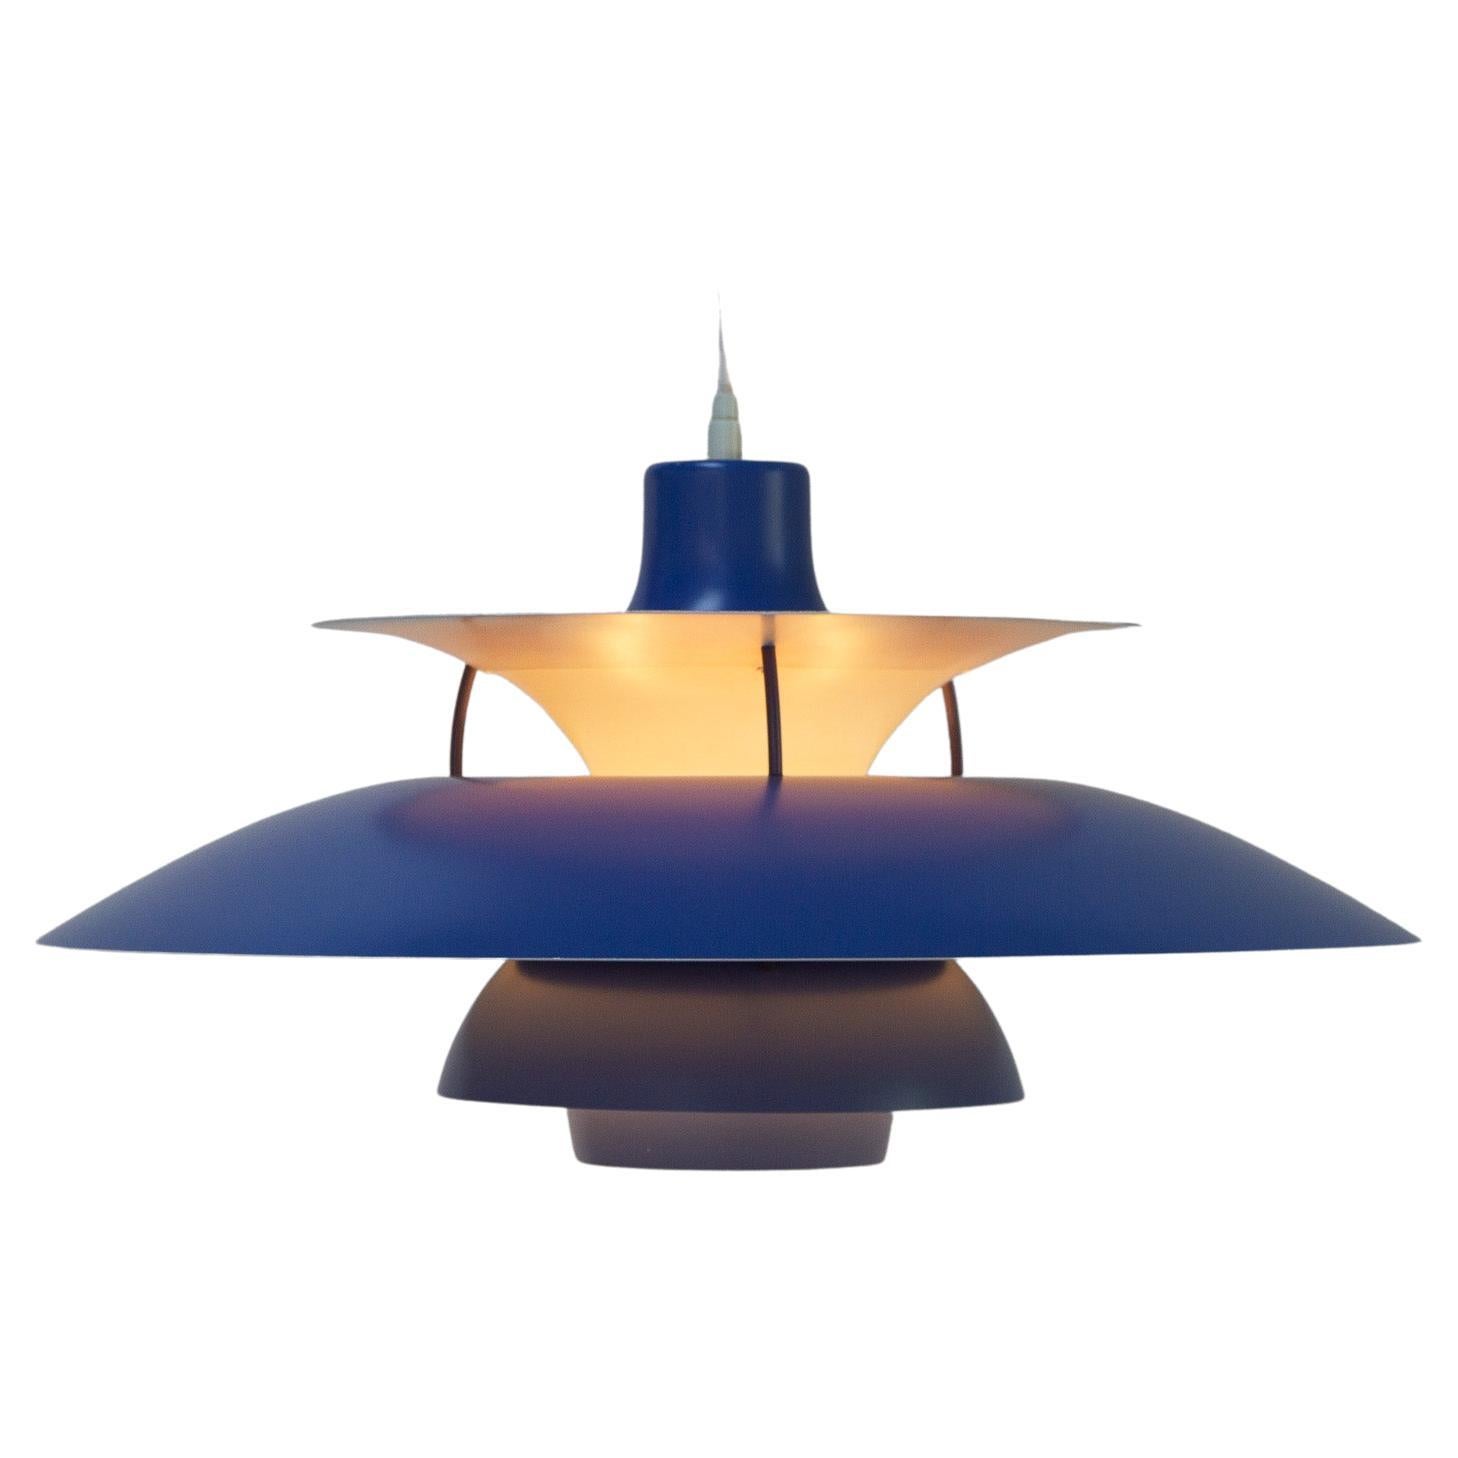 Pendente da soffitto danese vintage blu PH5 di Poul Henningsen, anni '60.
Iconica illuminazione danese progettata nel 1958 da Poul Henningsen per Louis Poulsen. Questo modello è conosciuto come PH 5 perché ha cinque tonalità individuali. Emette una